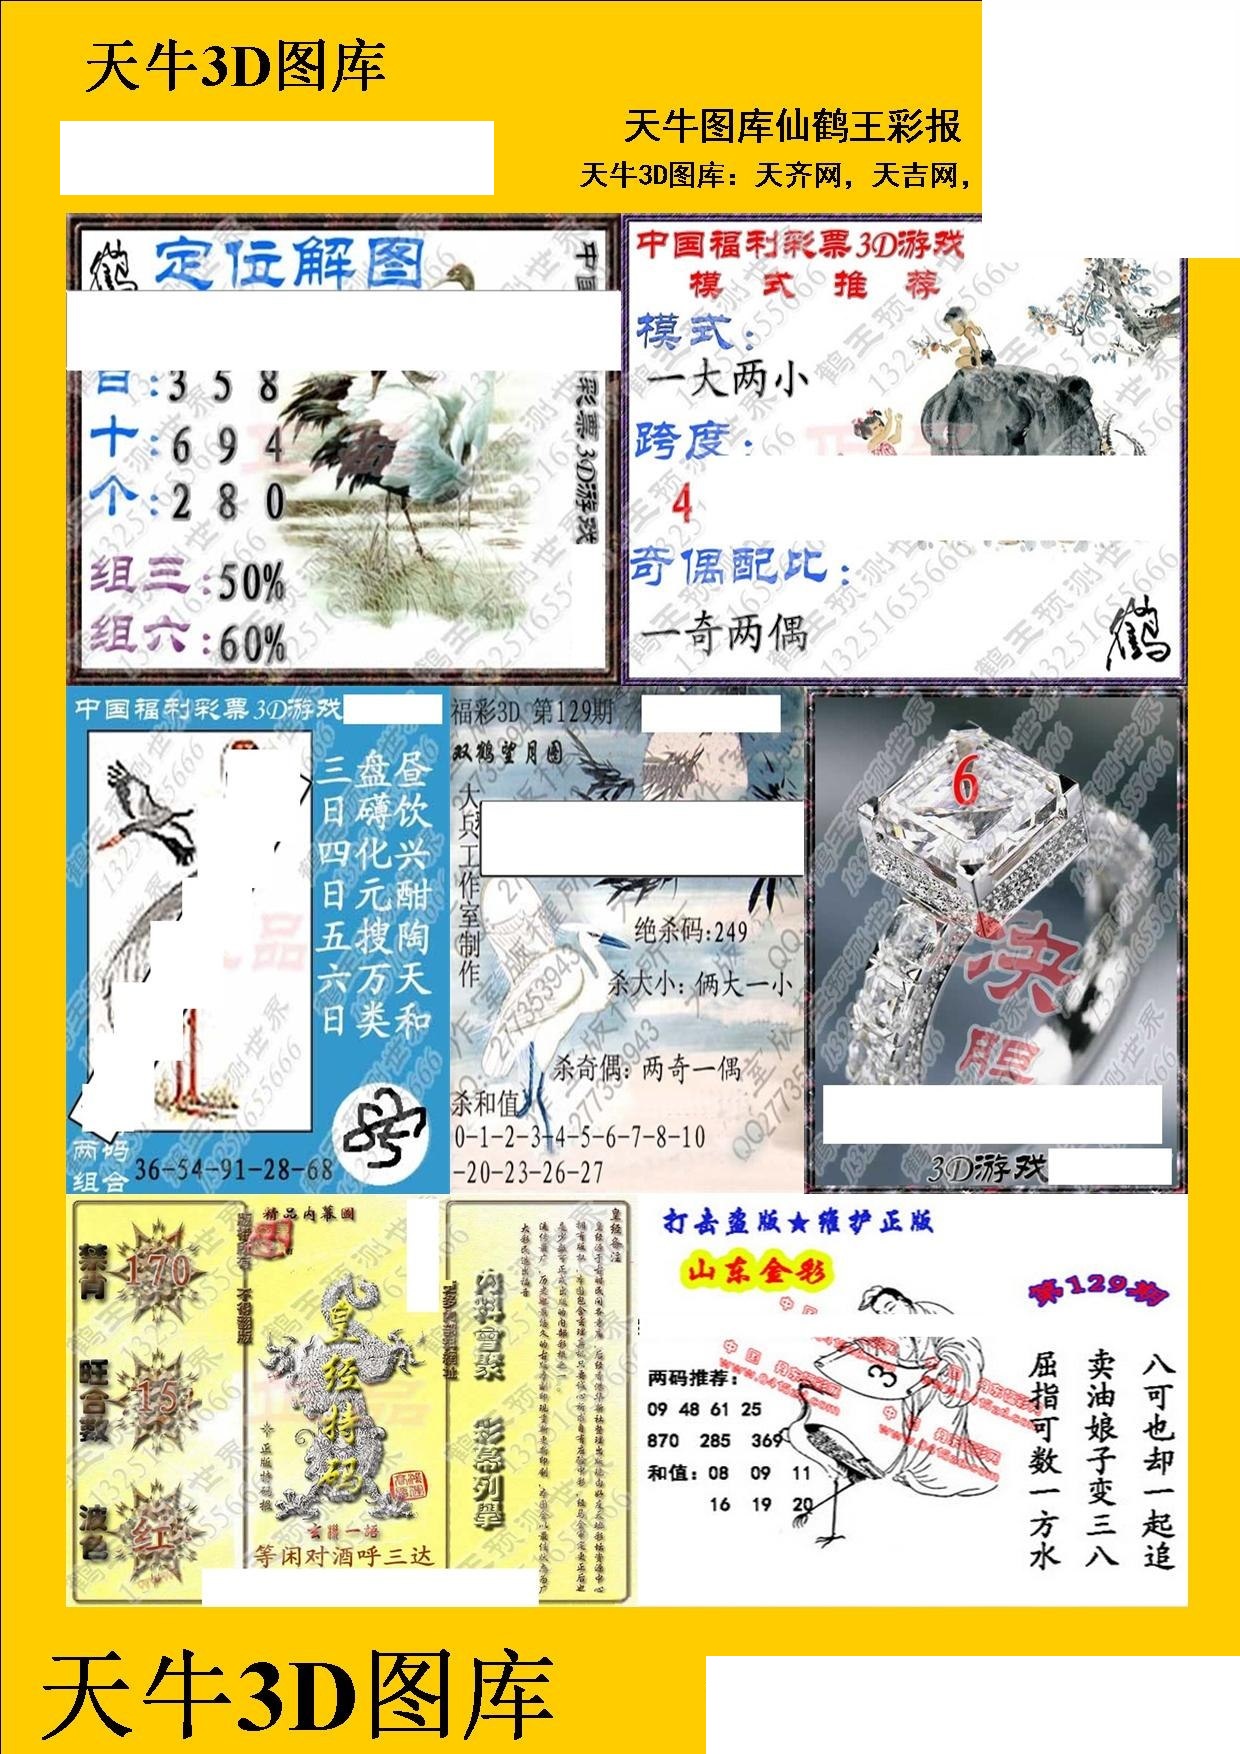 20129期福彩3d 天牛彩报图版系列 - 3d图库 - 微彩网